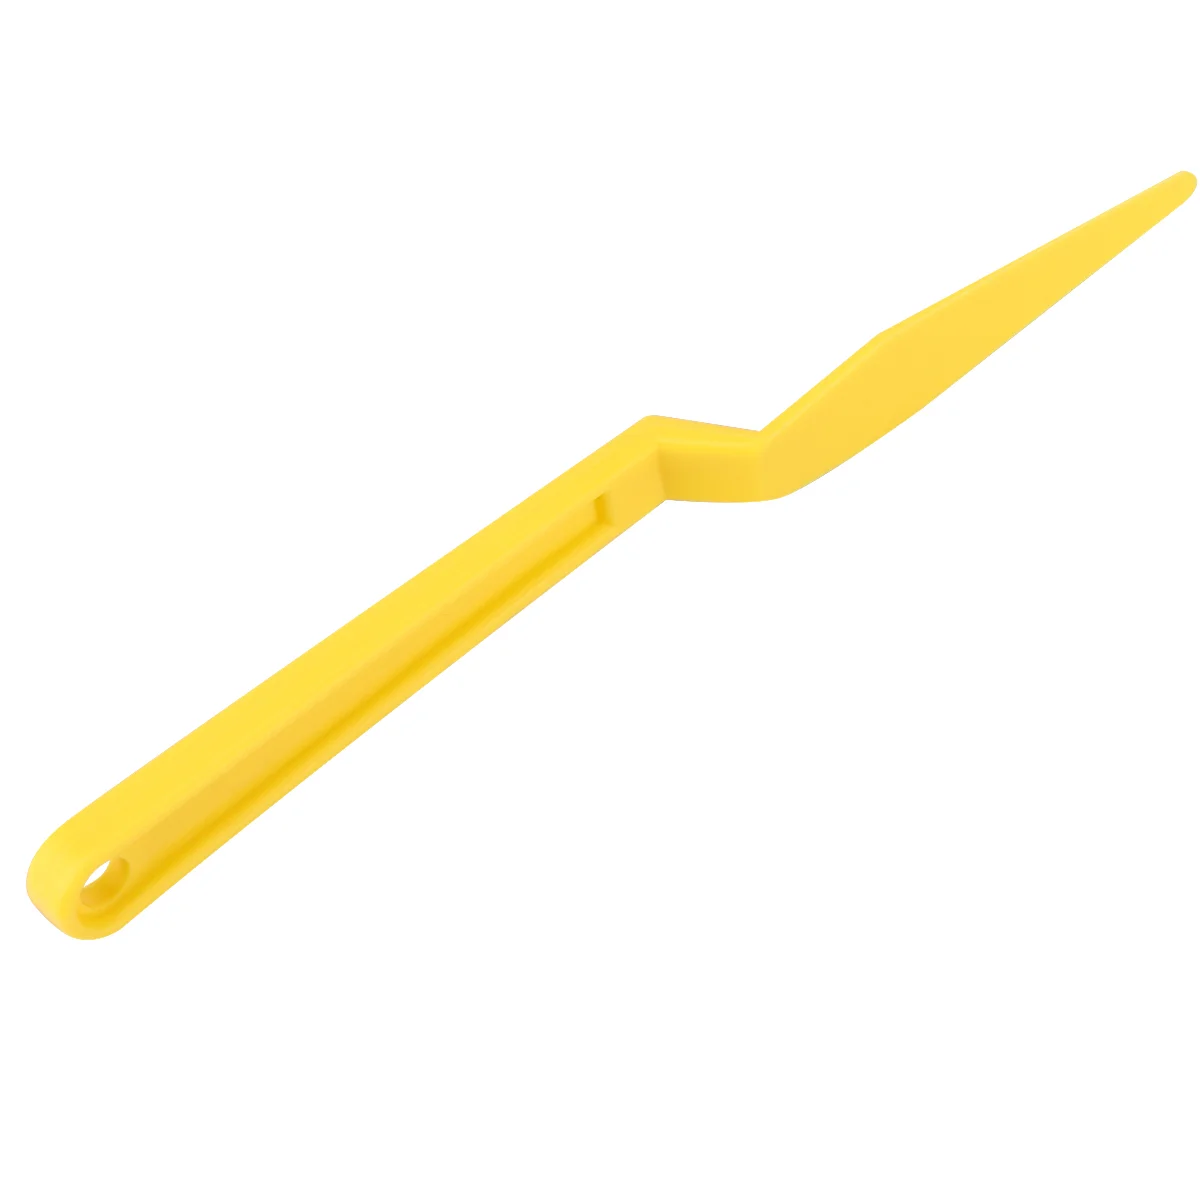 

1 шт. инструмент для автомобильной пленки, резак с длинной ручкой, скребок для обмотки, скребок, автомобильный инструмент (желтый)